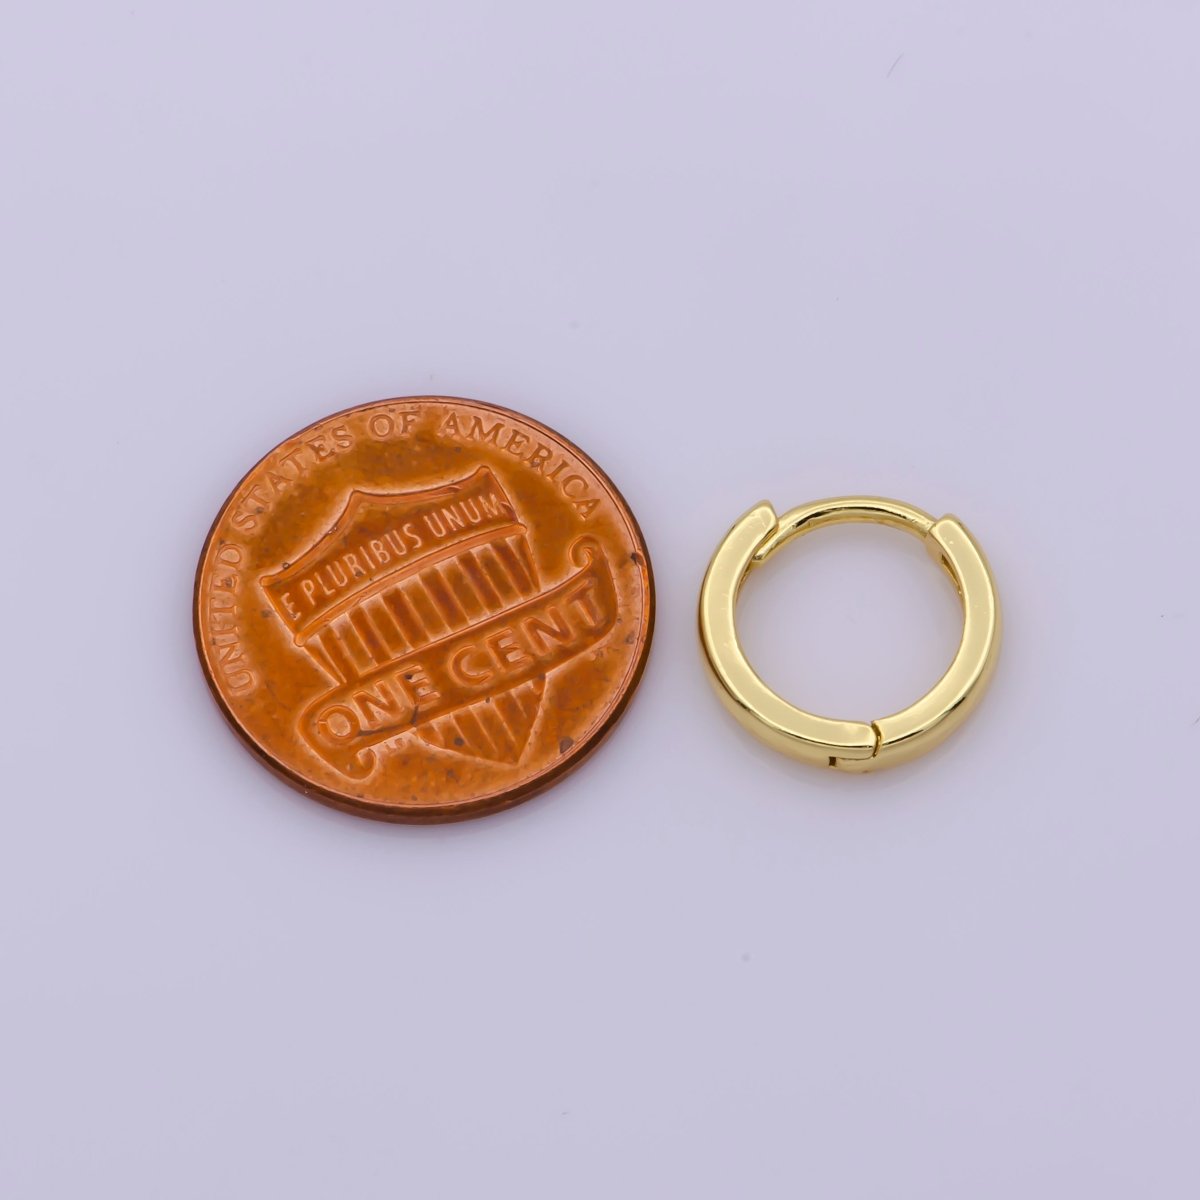 24K Gold Filled 12.4mm Minimalist Flat Huggie Hoop Earrings | Leo-563 - DLUXCA